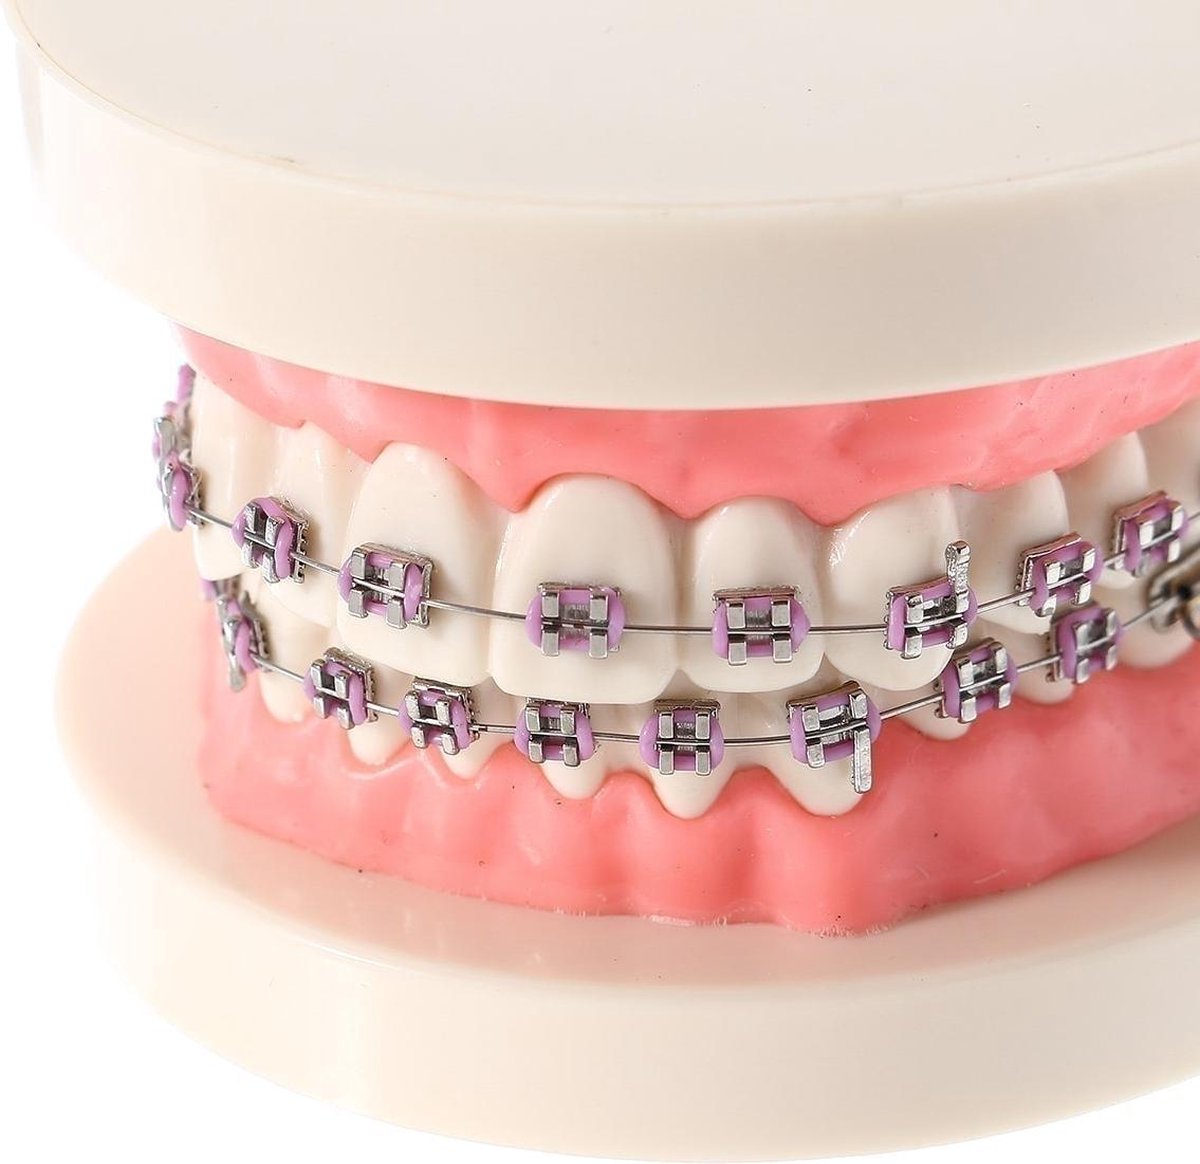 Tandheelkundige tanden malocclusie orthodontische model met volledige metalen beugels... |